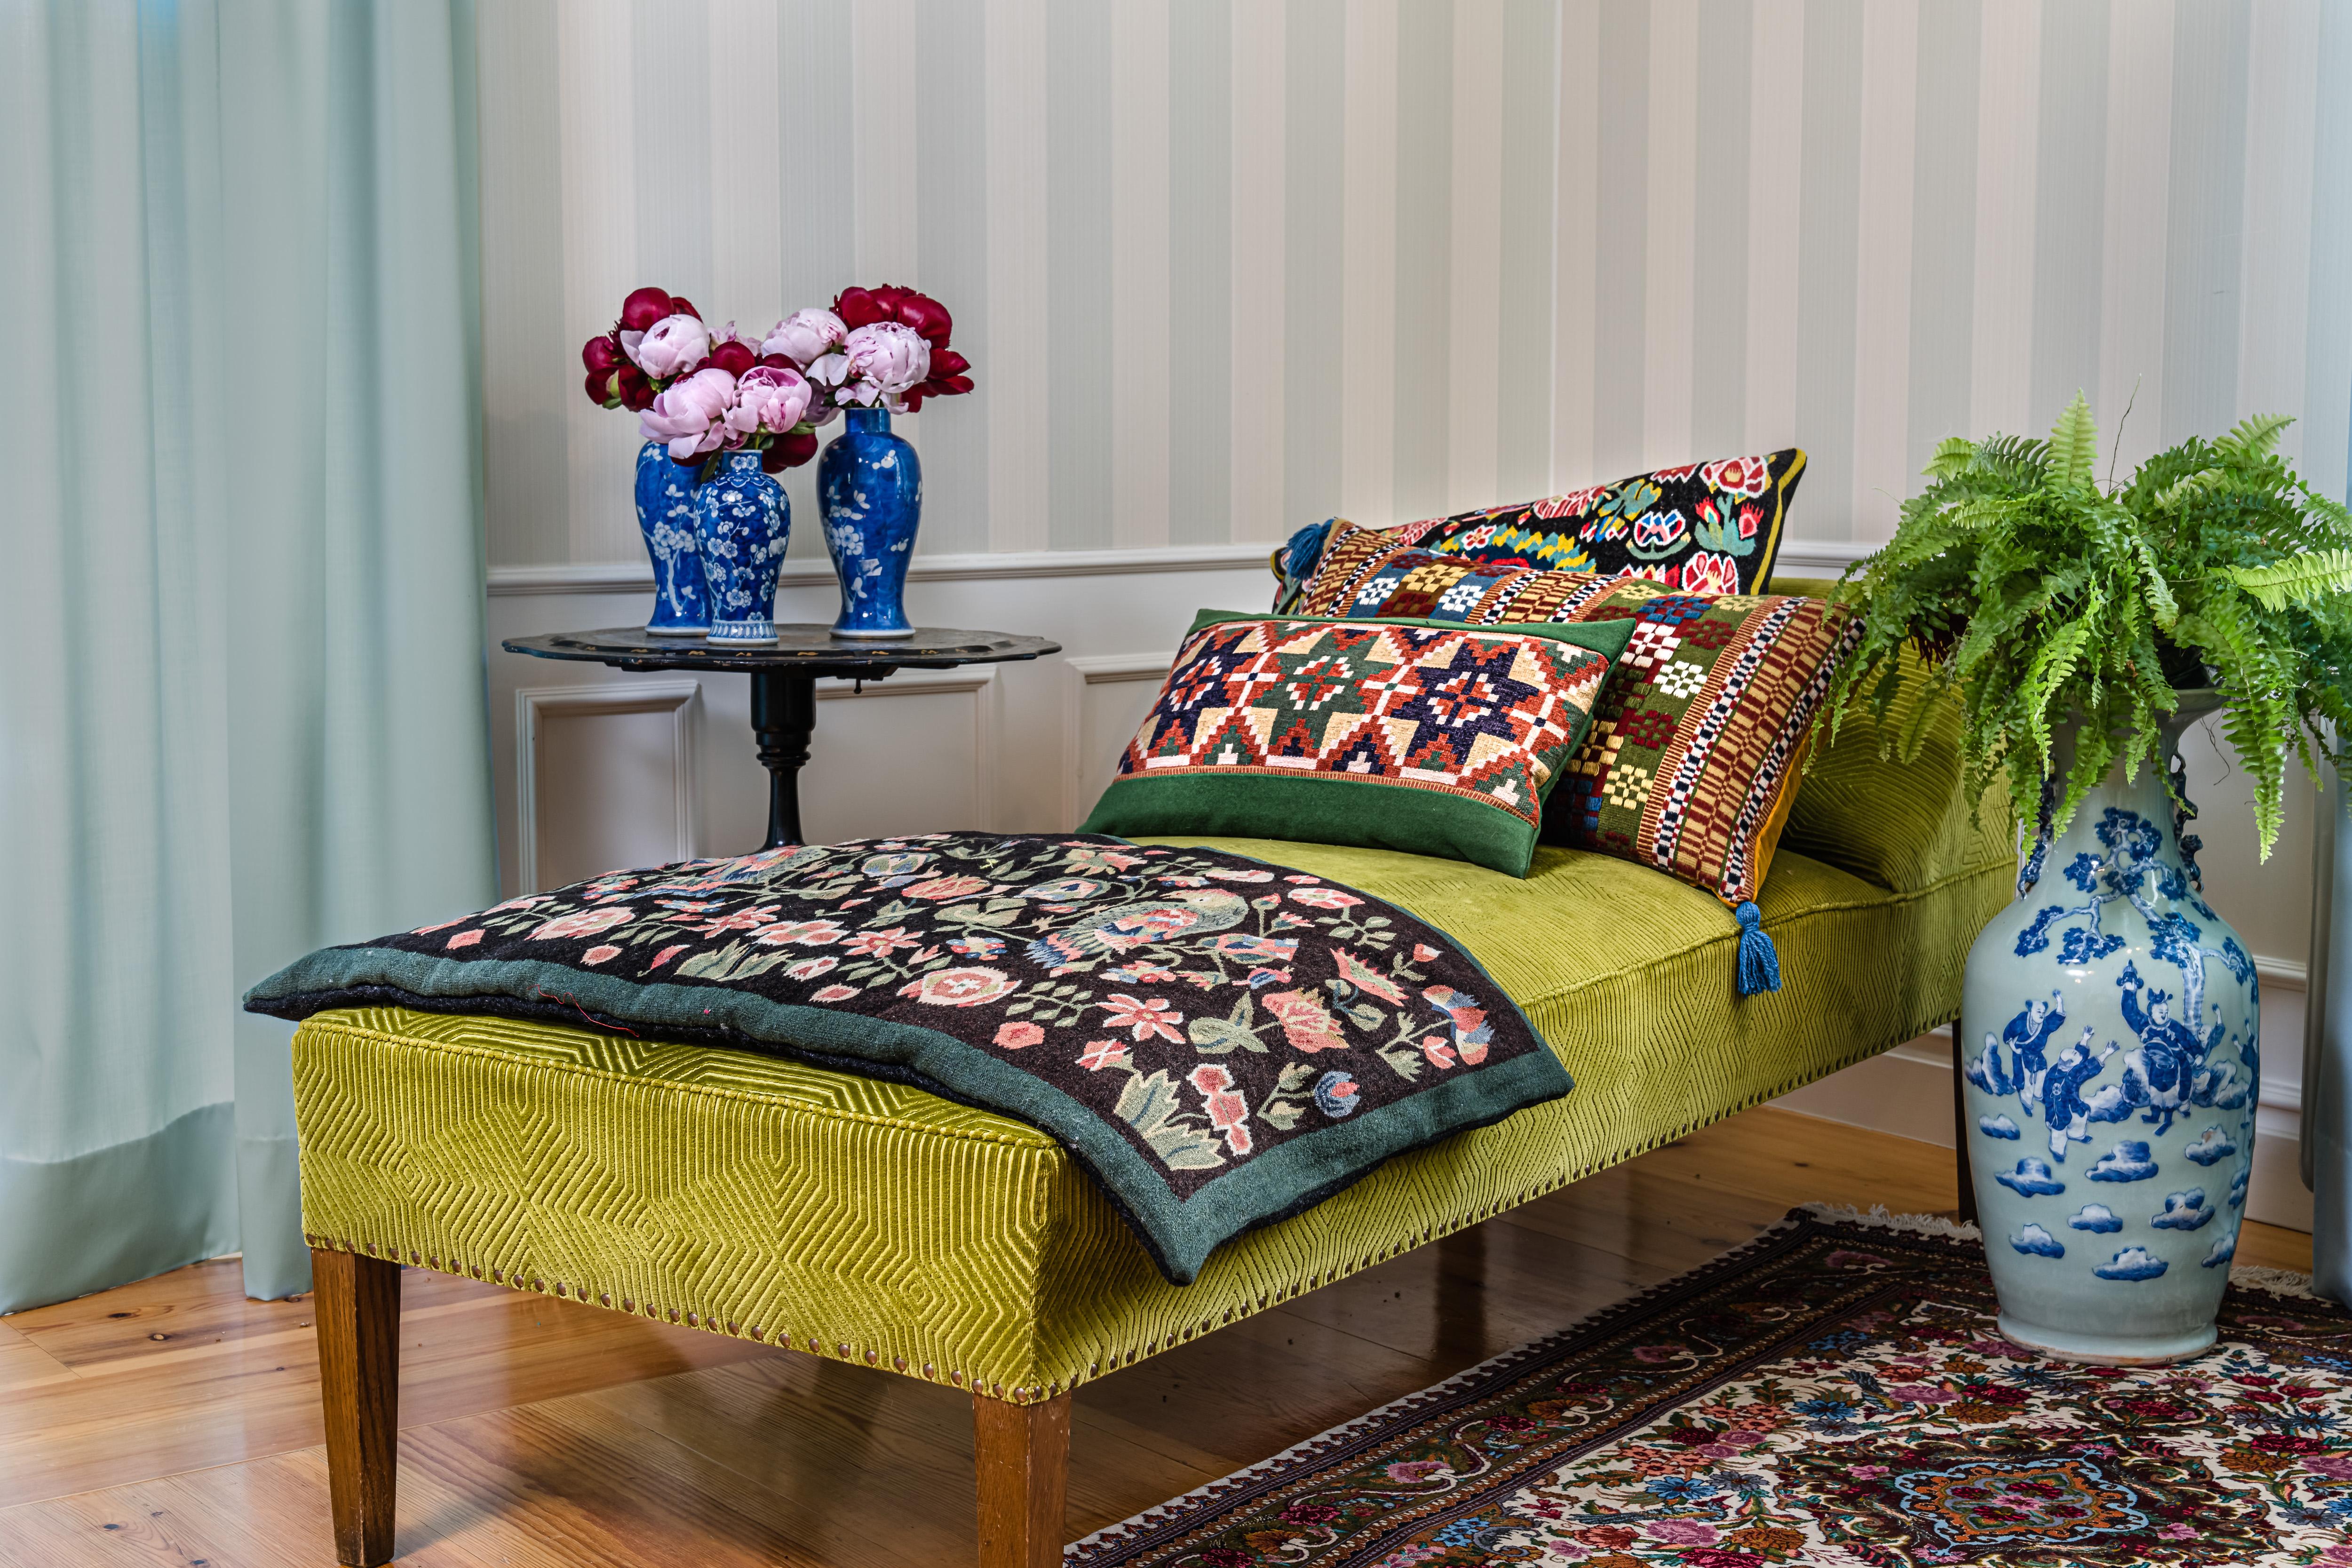 Der Papagei ist eines der charakteristischsten Muster in Scania Weave-Textilien. Dieses textile Papageienkissen wurde einst gewebt, um als Reitpad verwendet zu werden. Sie ist etwa ein Jahrhundert alt. Schöne weiche pastellige Töne. In perfektem